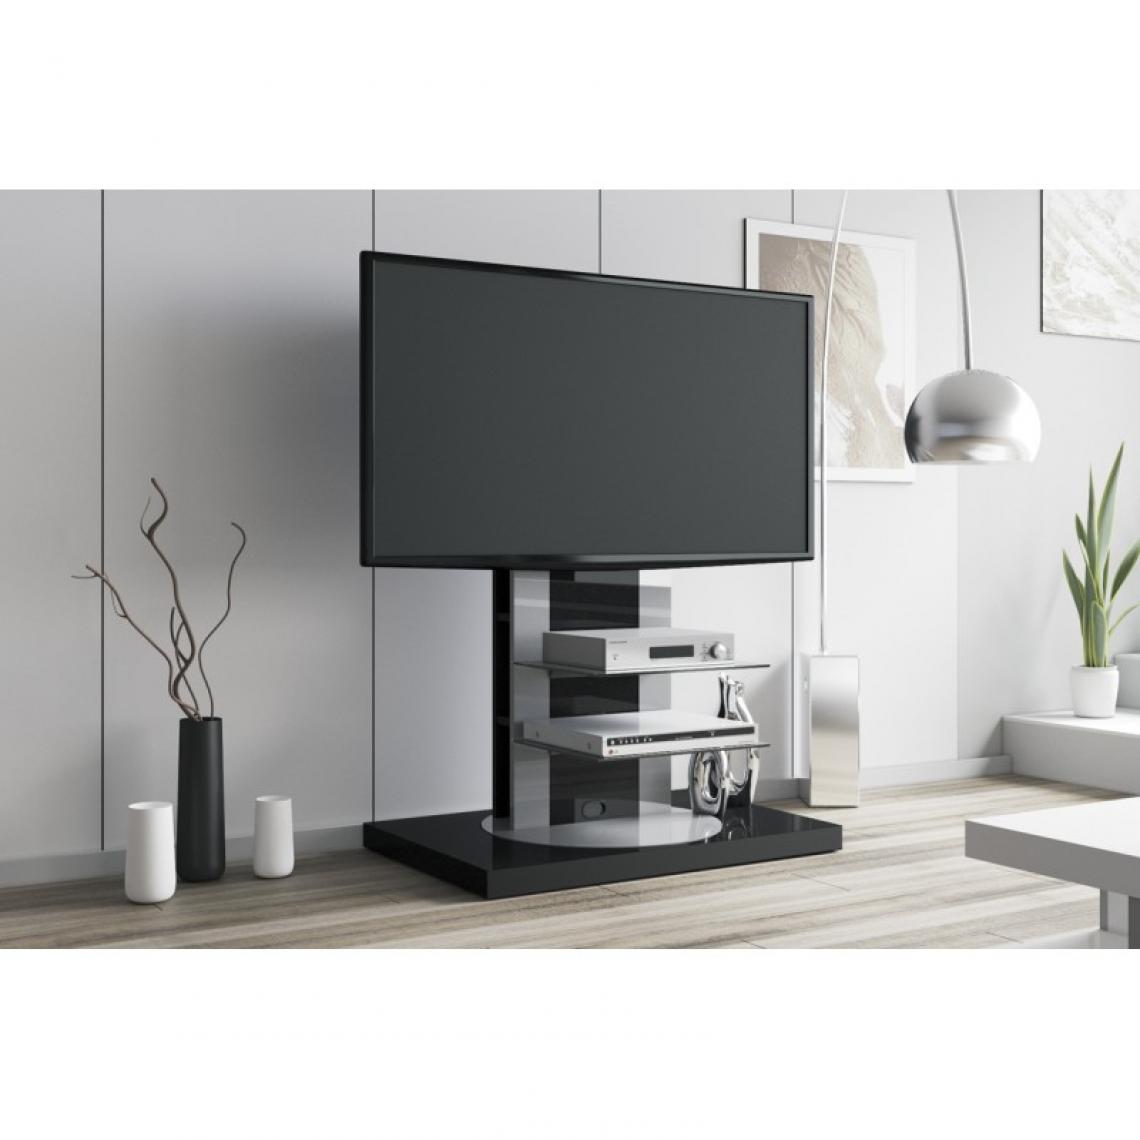 Carellia - Meuble TV design rotatif 126 cm x 90 cm x 59 cm - Noir - Meubles TV, Hi-Fi